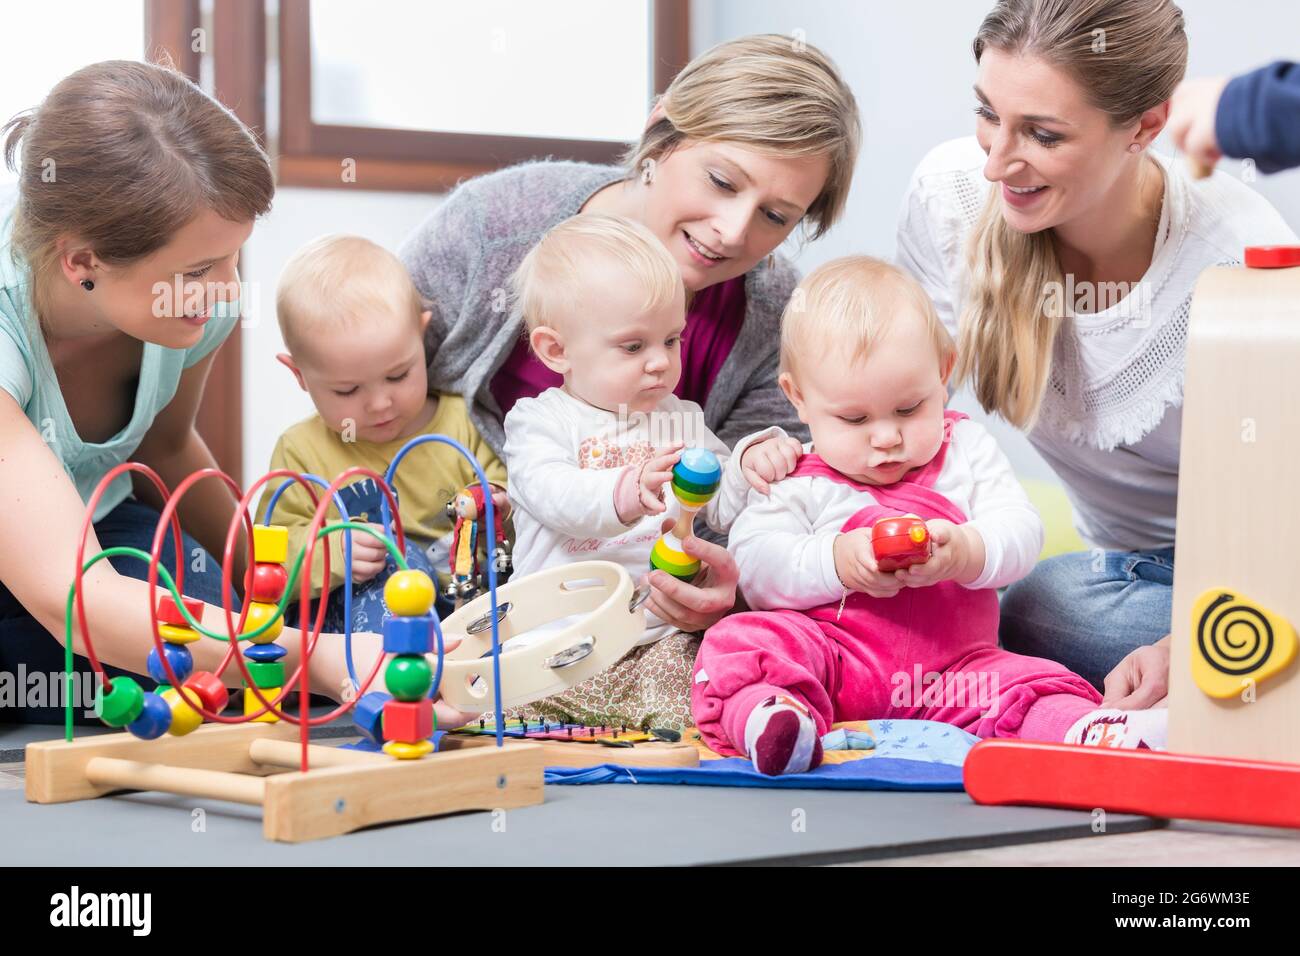 Drei engagierte und glückliche junge Mütter sitzen zusammen auf dem Boden, während sie ihren Babys beim Spielen mit sicheren bunten Spielsachen in einer modernen pla zusehen Stockfoto